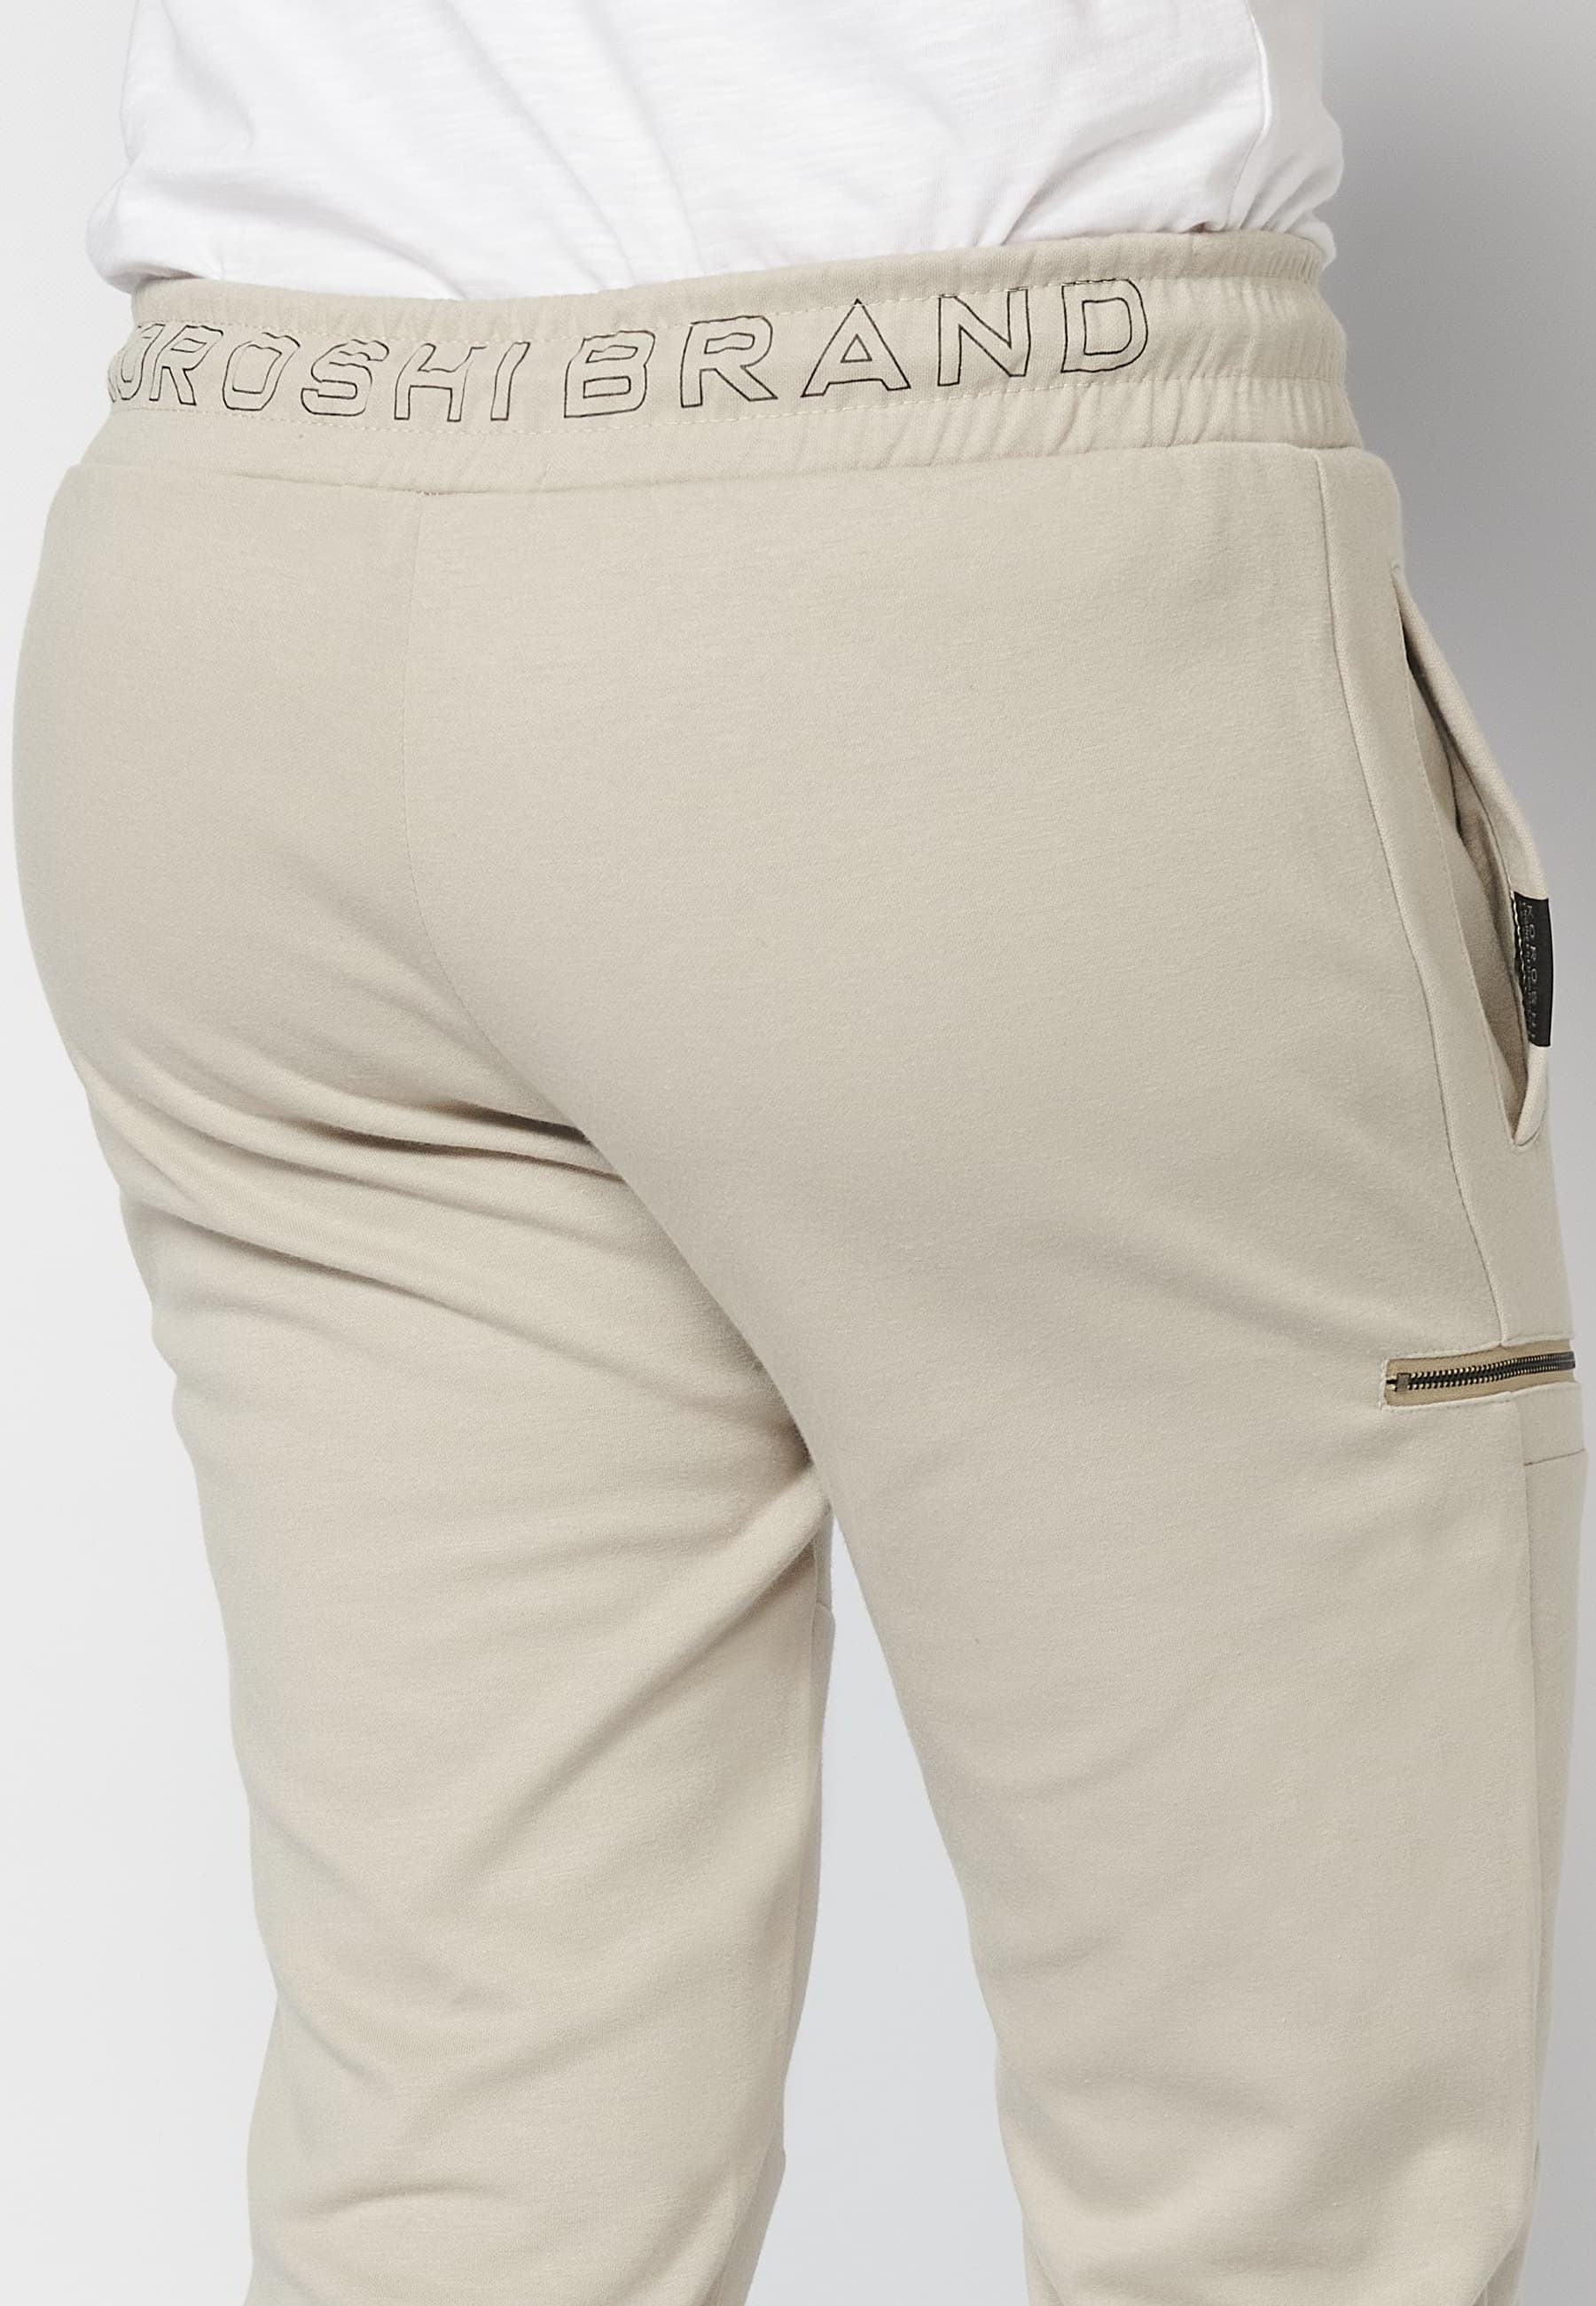 Pantalon de jogging long avec taille caoutchoutée et cordon de serrage avec découpes aux genoux, couleur Stone, pour Homme 5